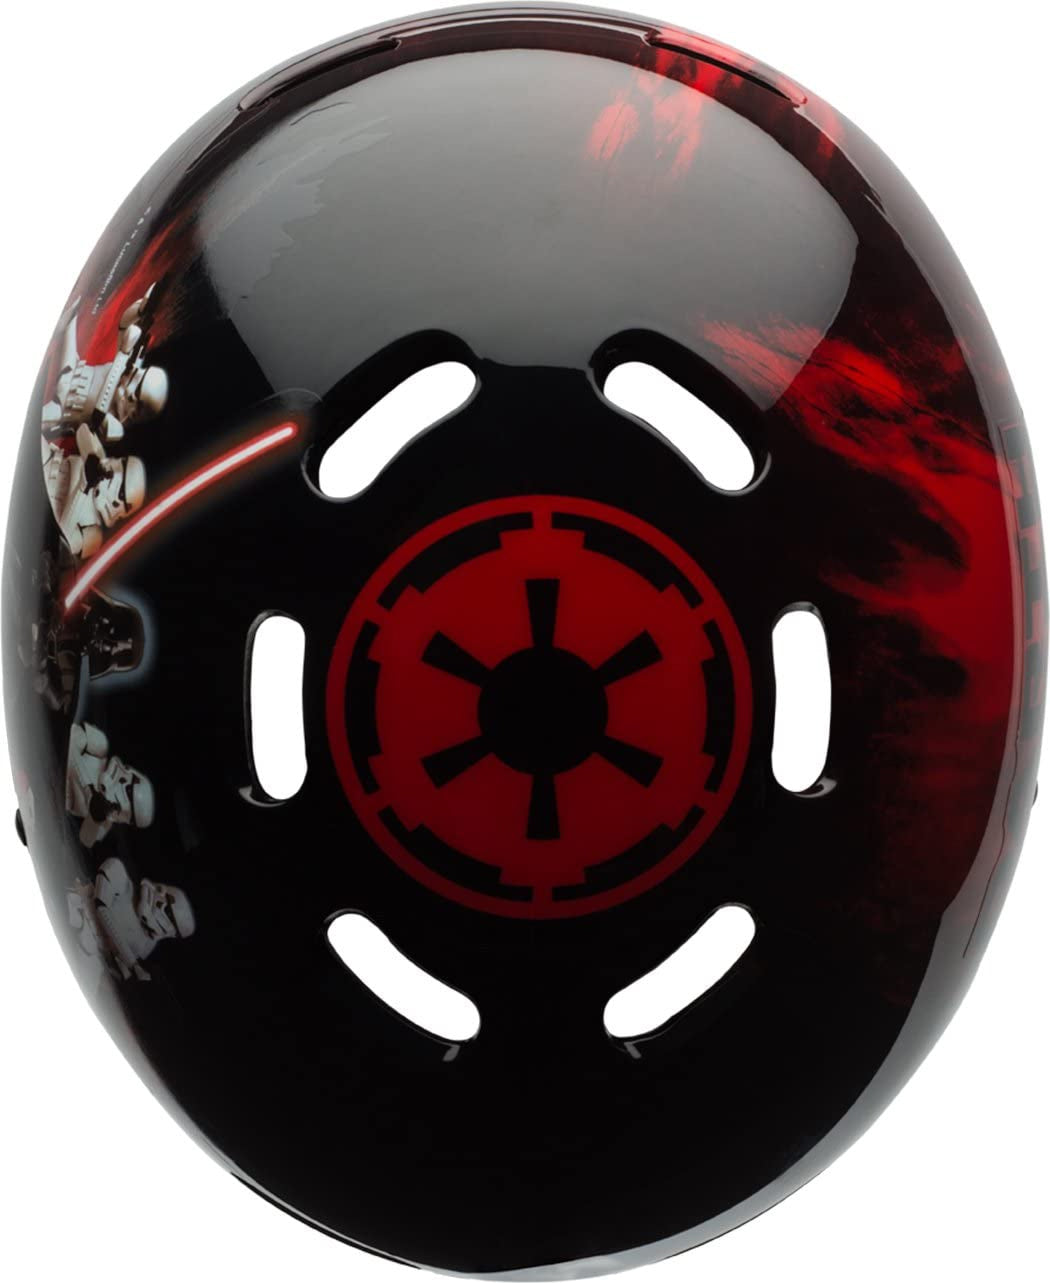 Star Wars Darth Vader Bell Helmet